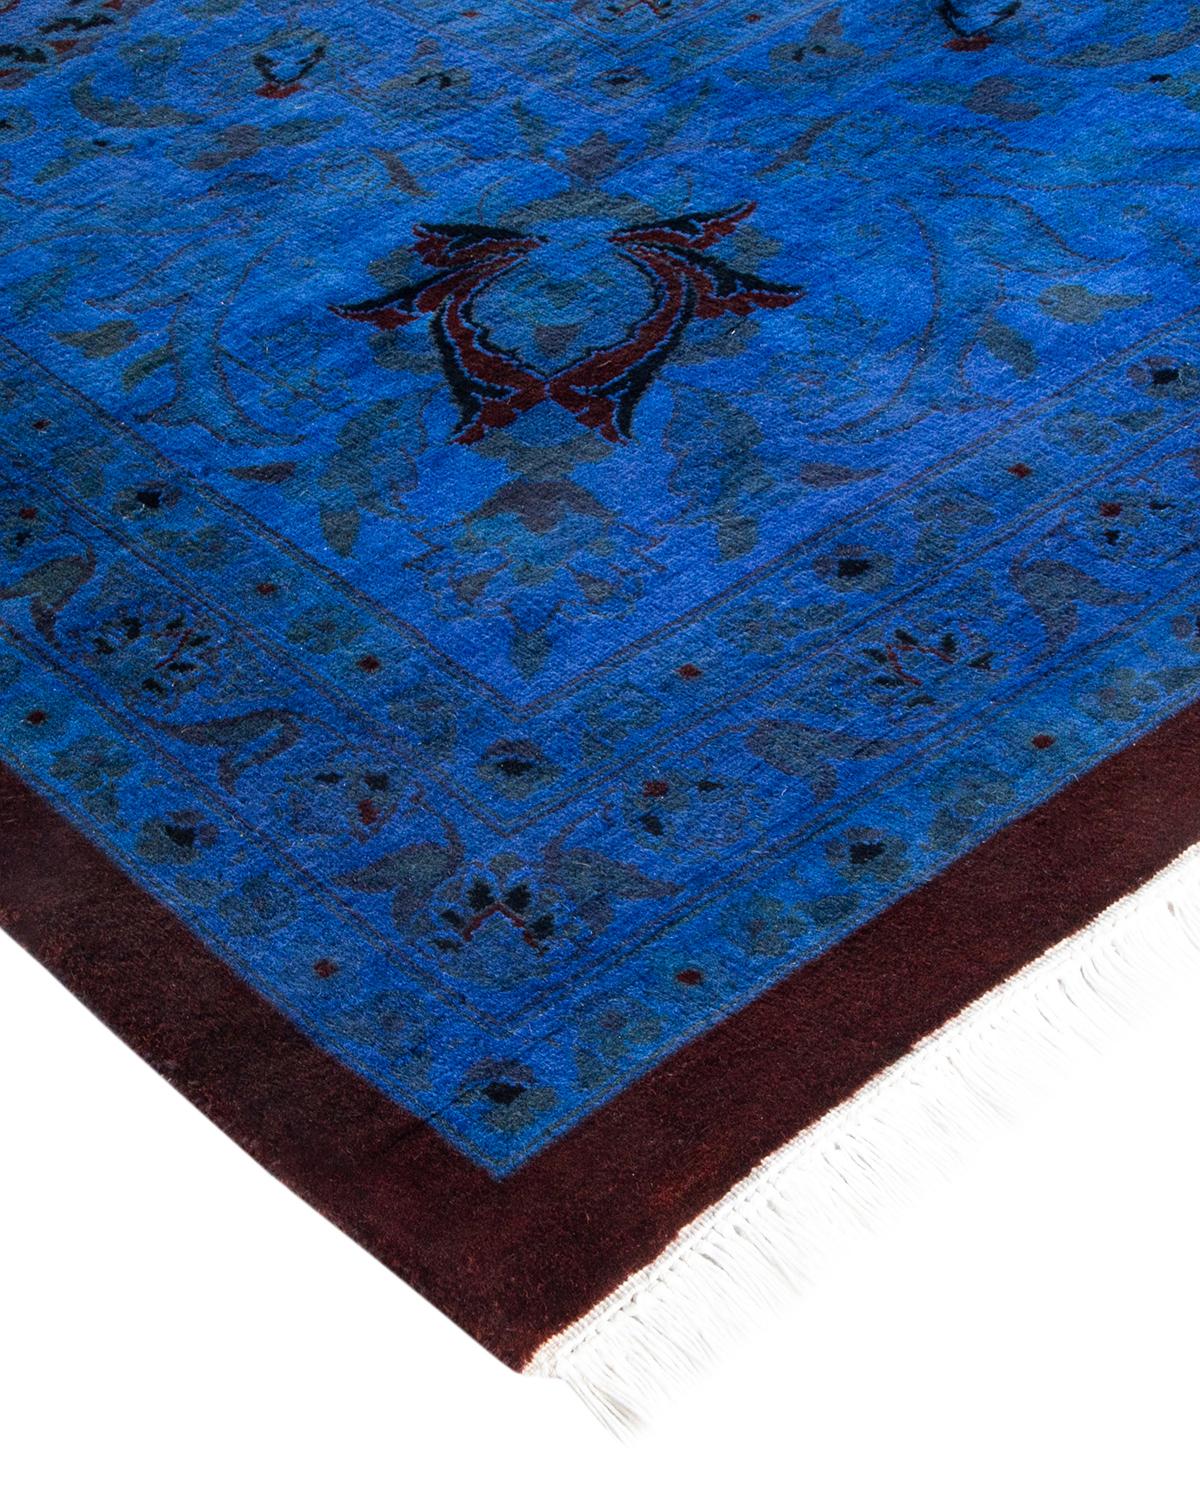 Vibrance-Teppiche sind der Inbegriff von Klassik mit Pfiff: traditionelle Muster in leuchtenden Farben gefärbt. Jeder handgeknüpfte Teppich wird mit einem 100 % natürlichen botanischen Farbstoff gewaschen, der verborgene Nuancen in den Mustern